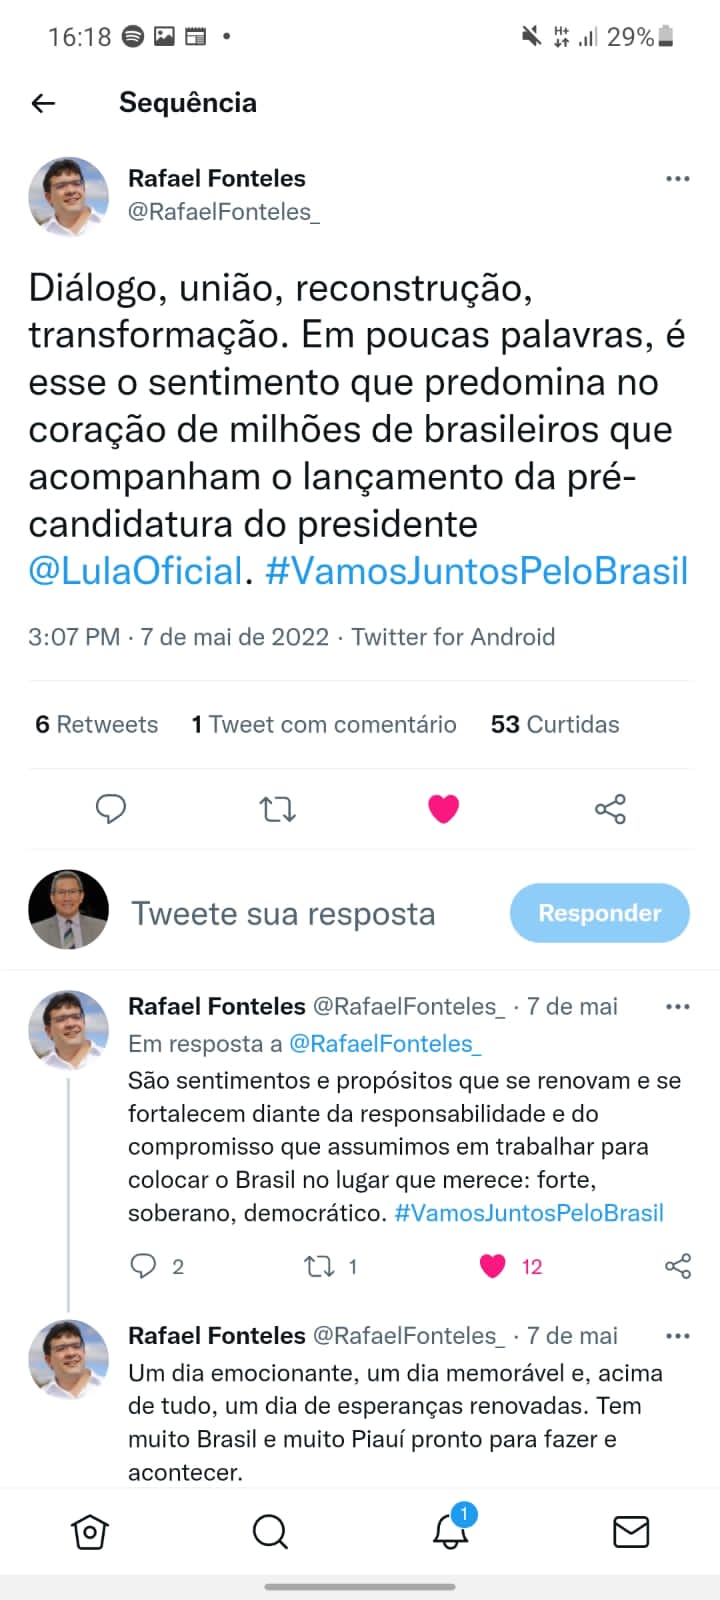 “Tem muito Brasil e muito Piauí pronto para fazer e acontecer”, diz Rafael - Imagem 1